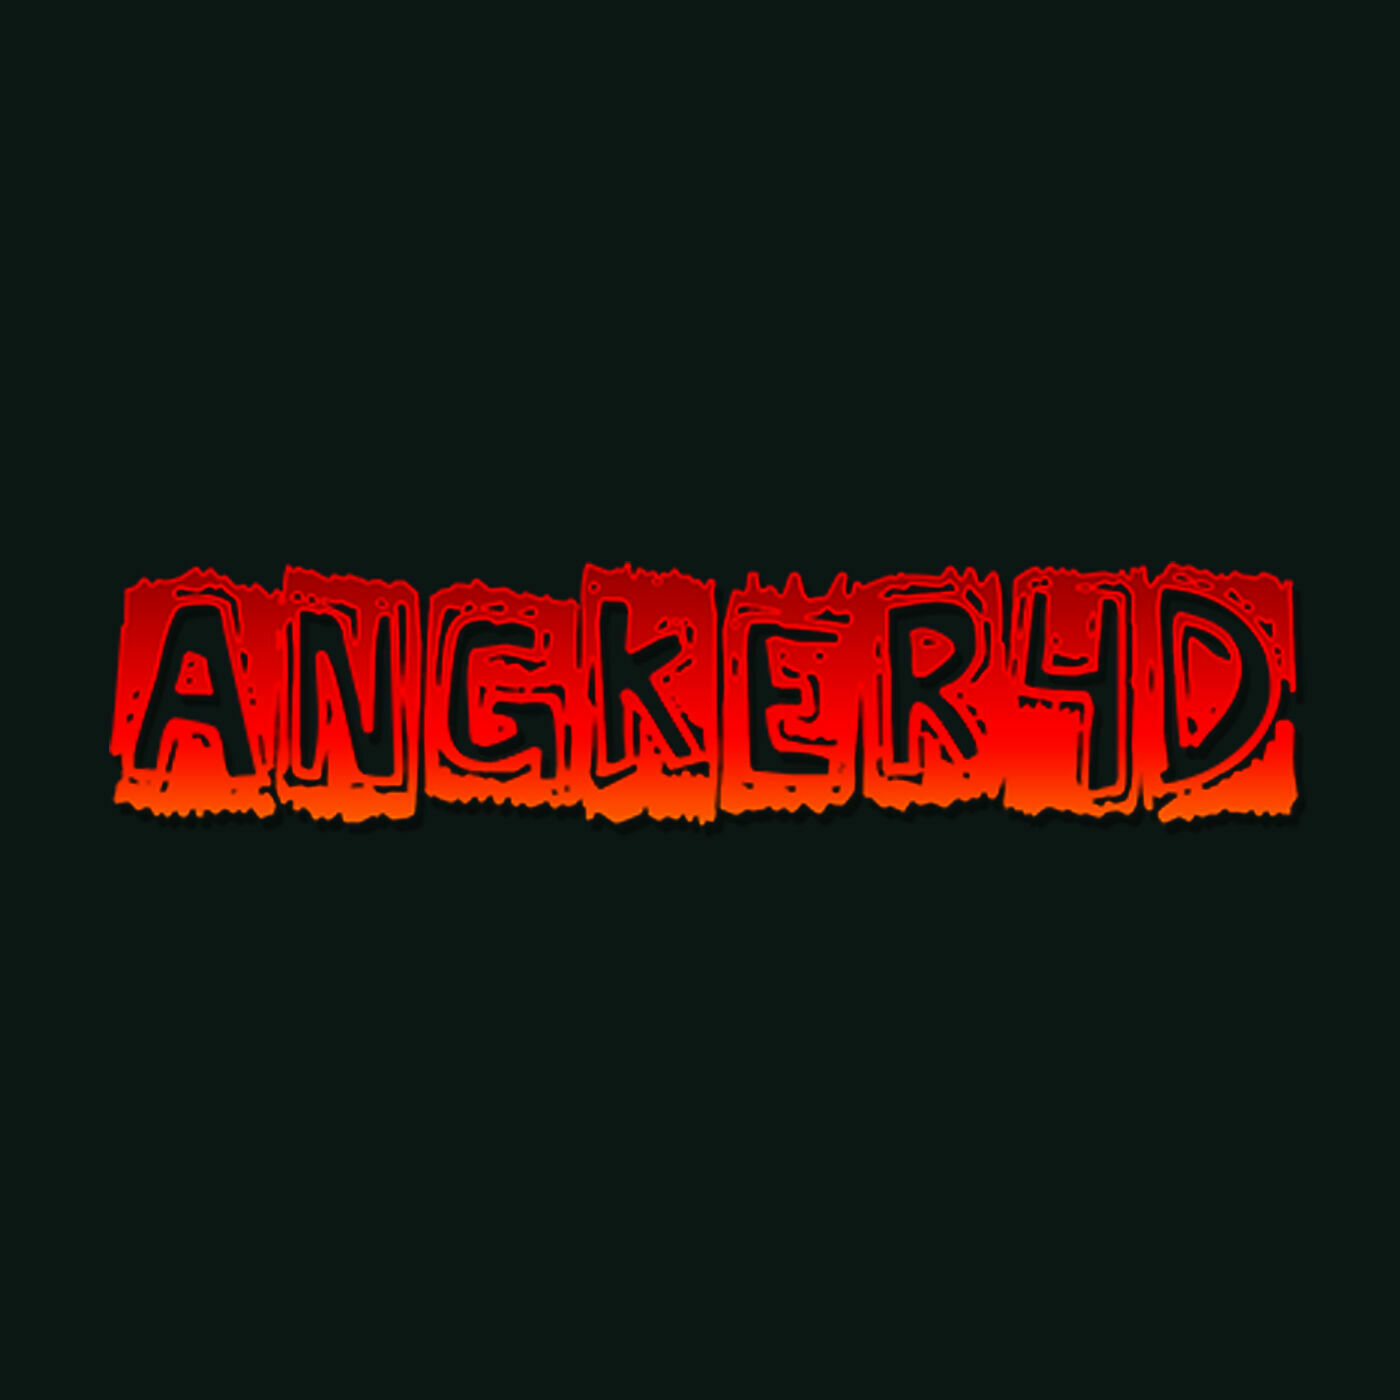 Avatar: Angker4d